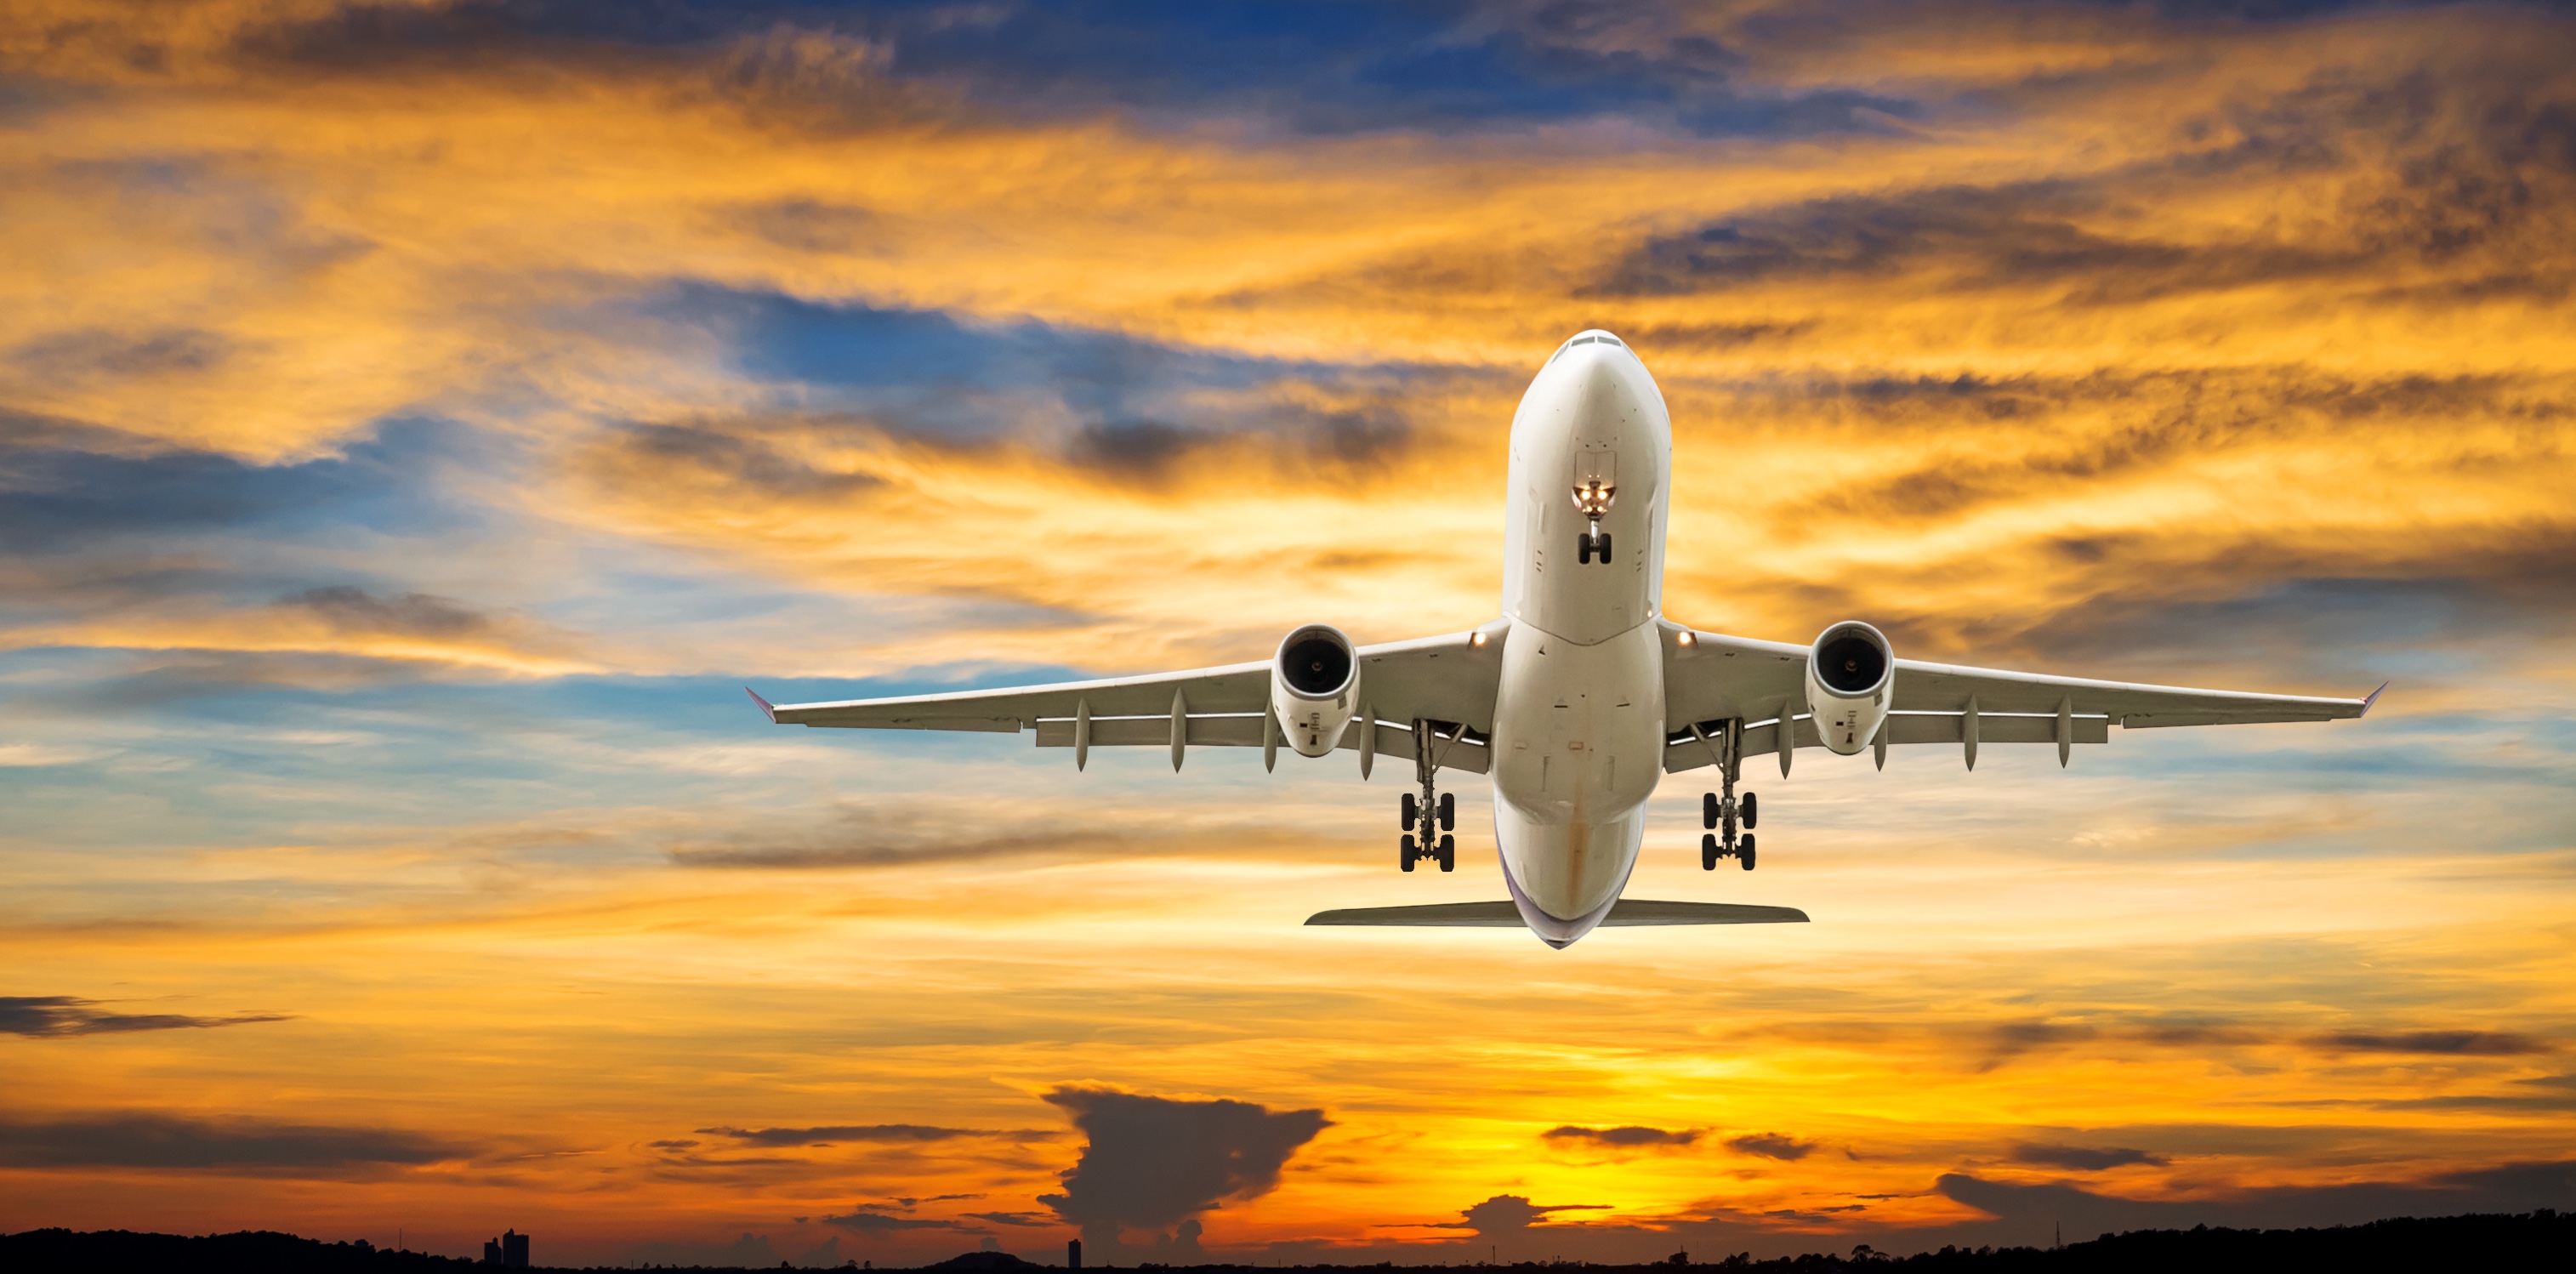 Tìm các chuyến bay giá rẻ trên SATA Air Acores